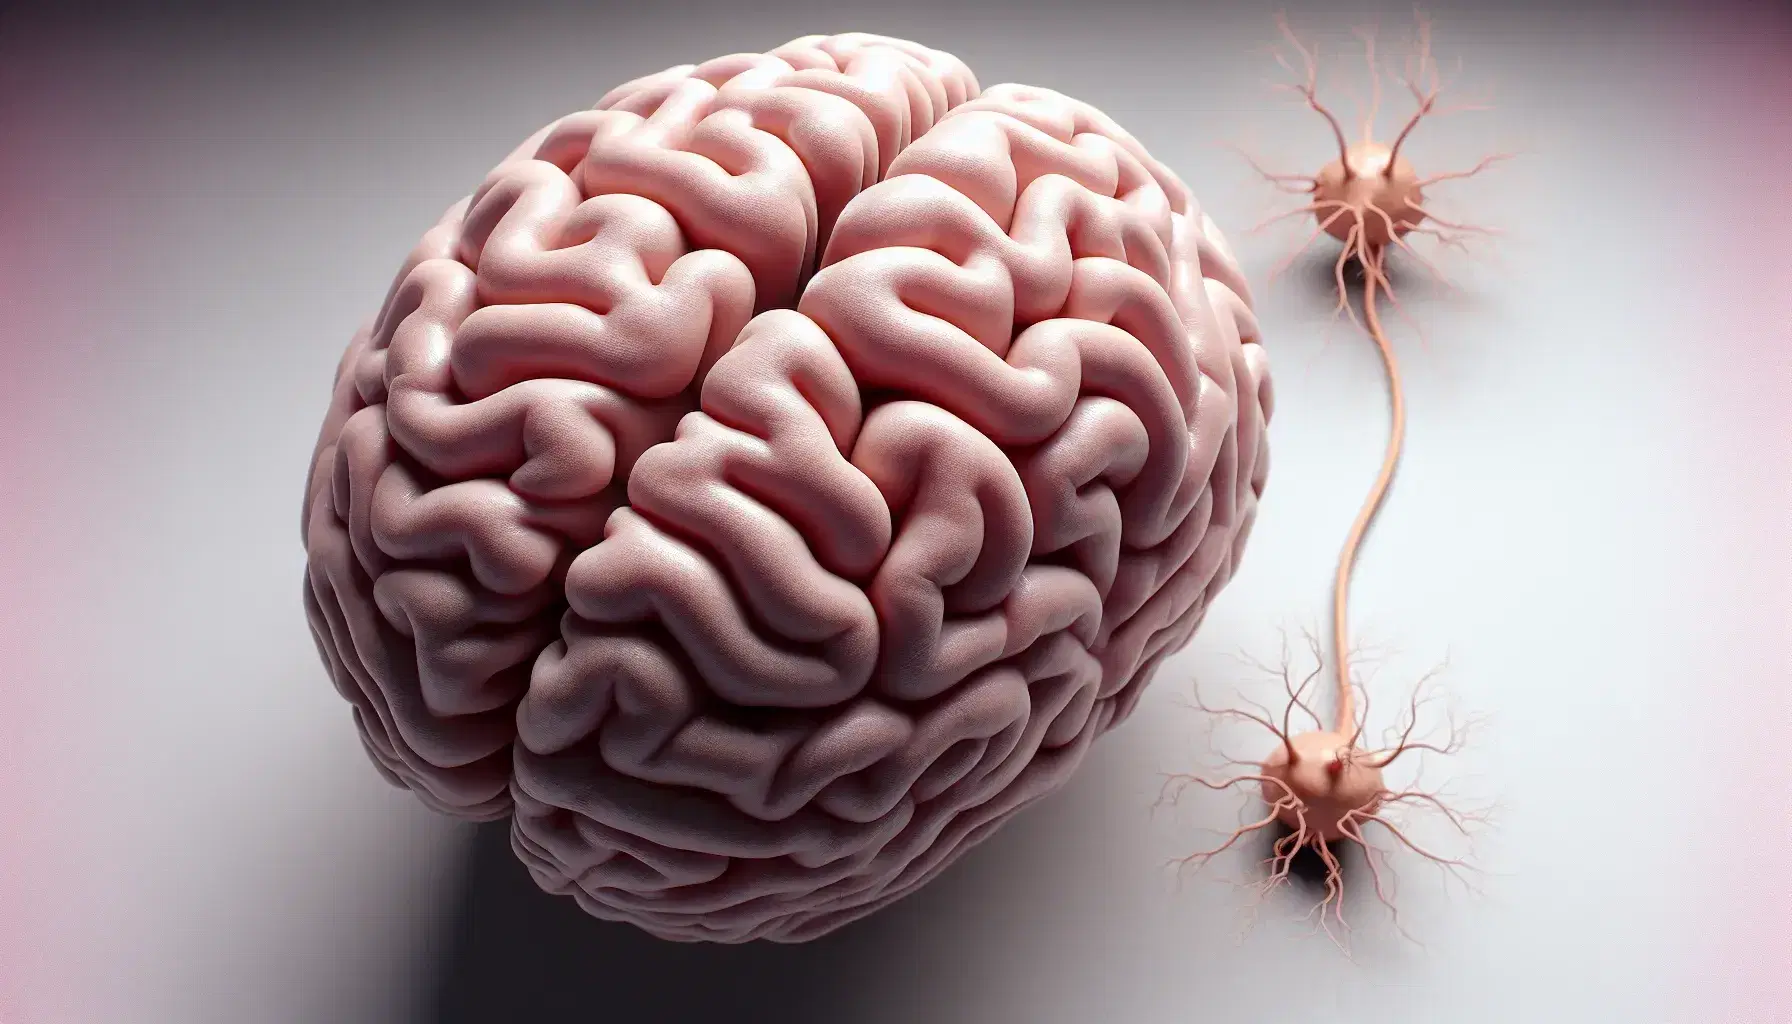 Vista superior de un cerebro humano realista con hemisferios, fisura longitudinal, convoluciones y tronco encefálico, junto a una neurona tridimensional con dendritas y axón.